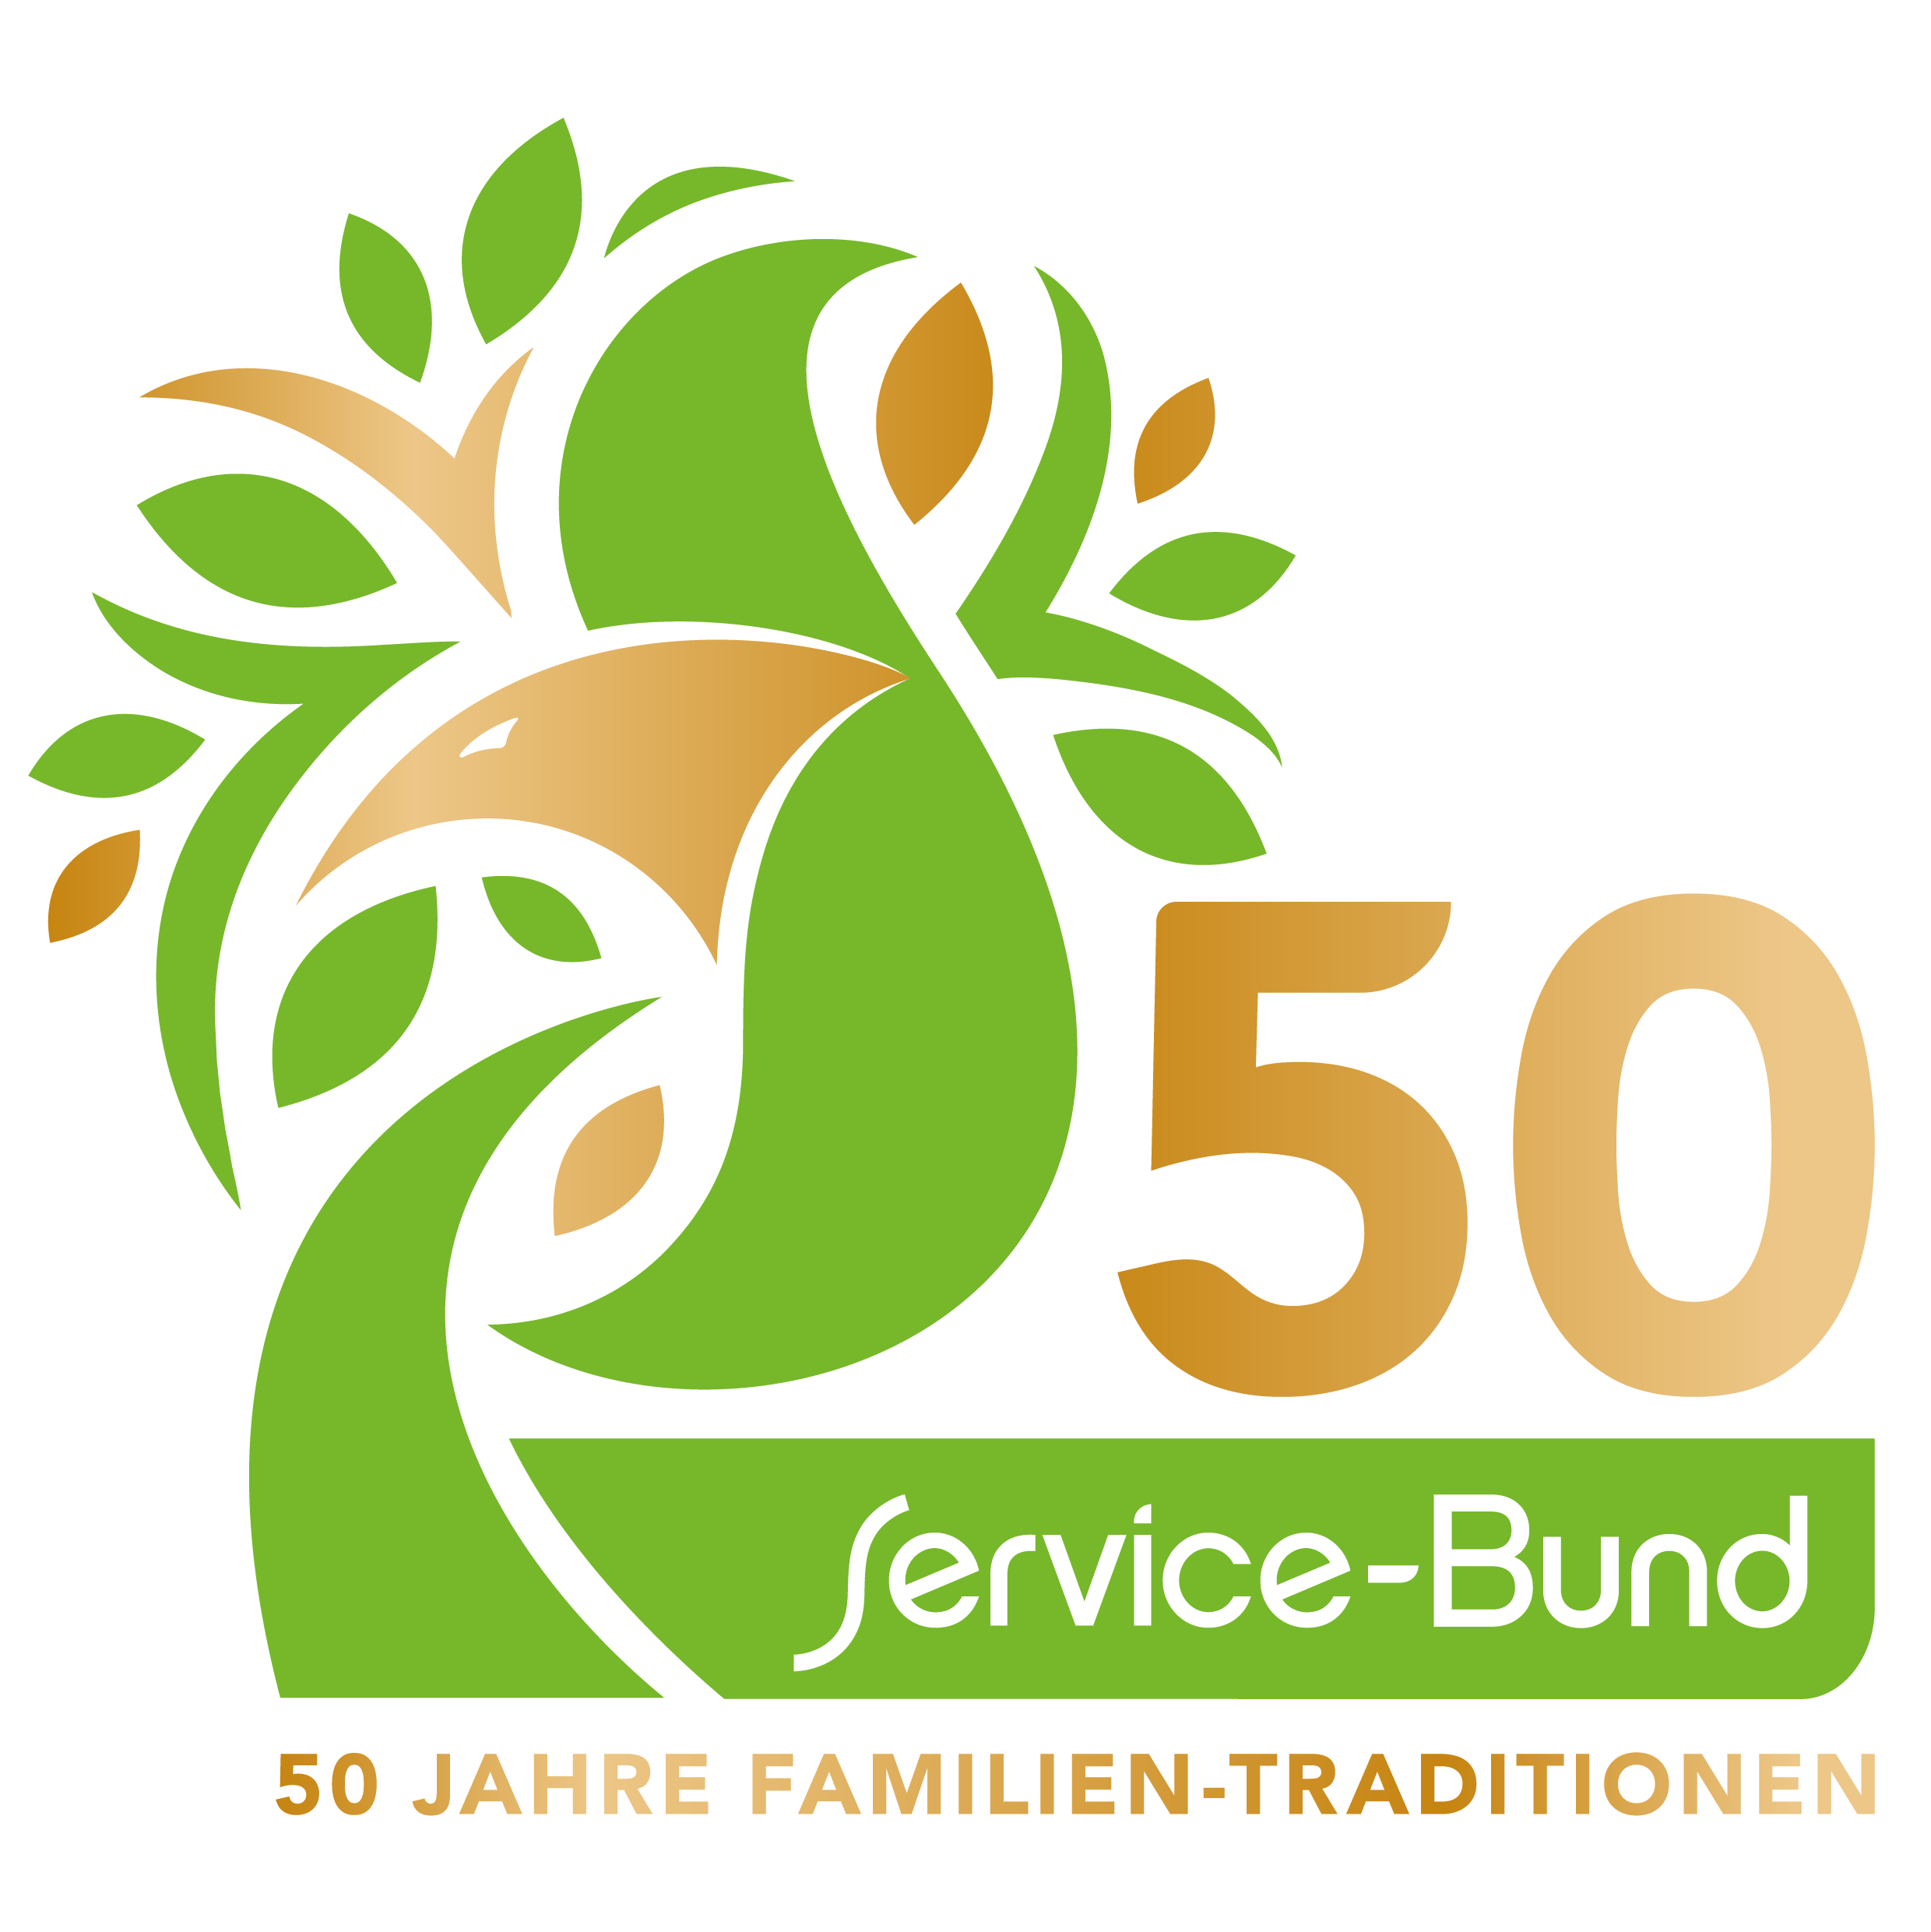 Jubiläumslogo des Service-Bund zum 50-jährigen Bestehen